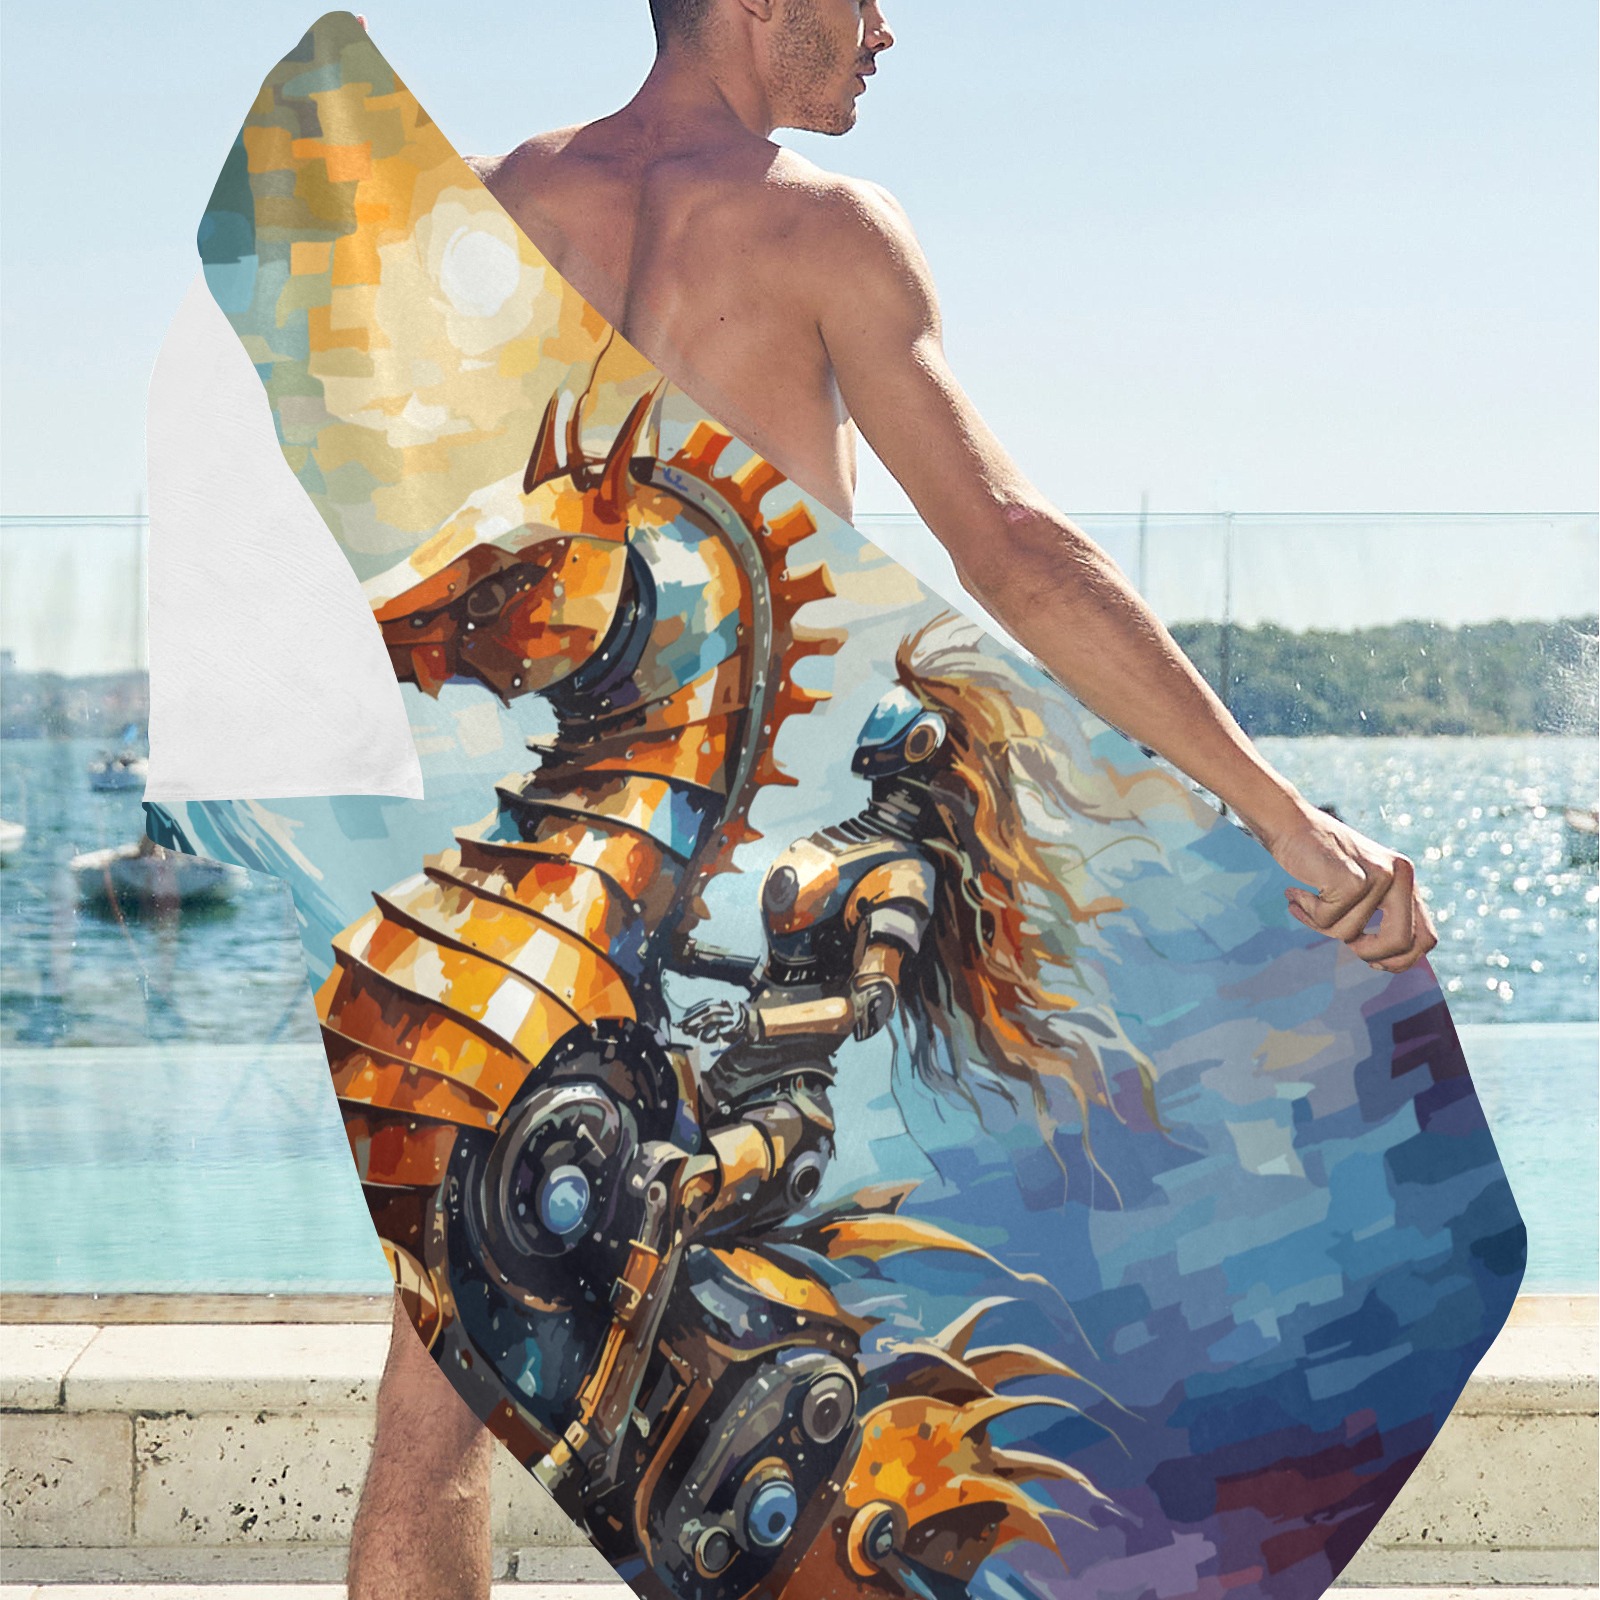 Cyborg woman rides a mechanical seahorse art sea. Beach Towel 32"x 71"